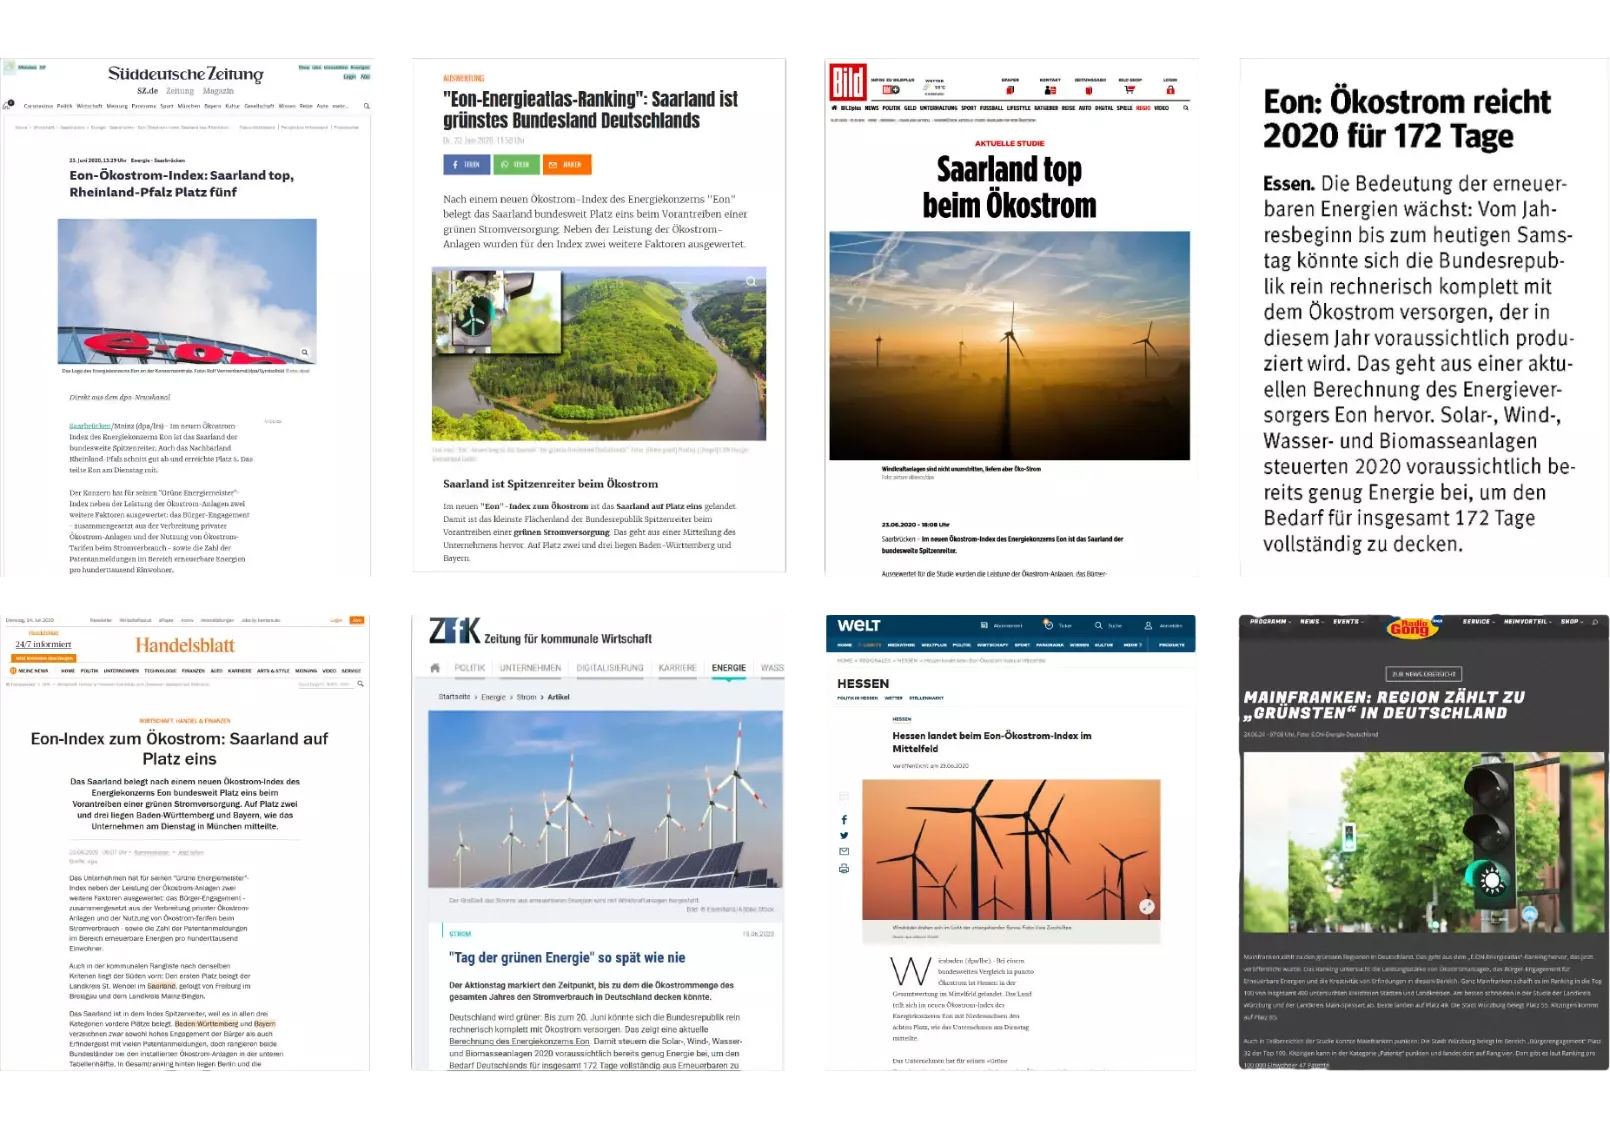 Collage von Screenshots verschiedener Medienportale zur Berichterstattung über den Energieatlas.